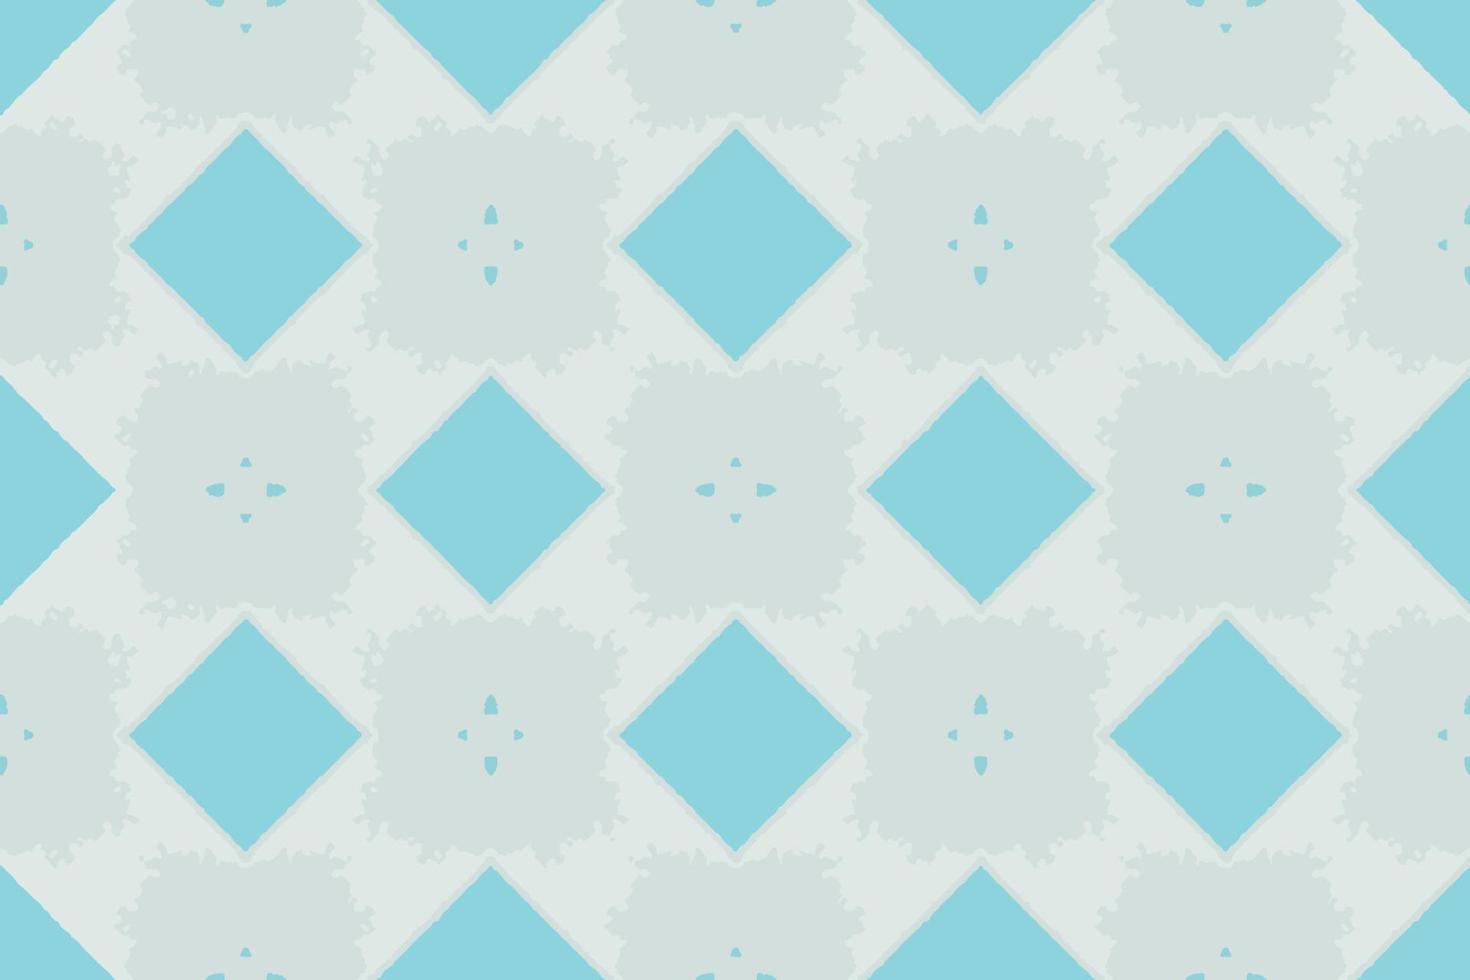 abstract naadloos patroon, ontworpen voor gebruik voor interieur,behang,stof,gordijn,tapijt,kleding,batik,satijn,achtergrond , illustratie, borduurwerk stijl. vector